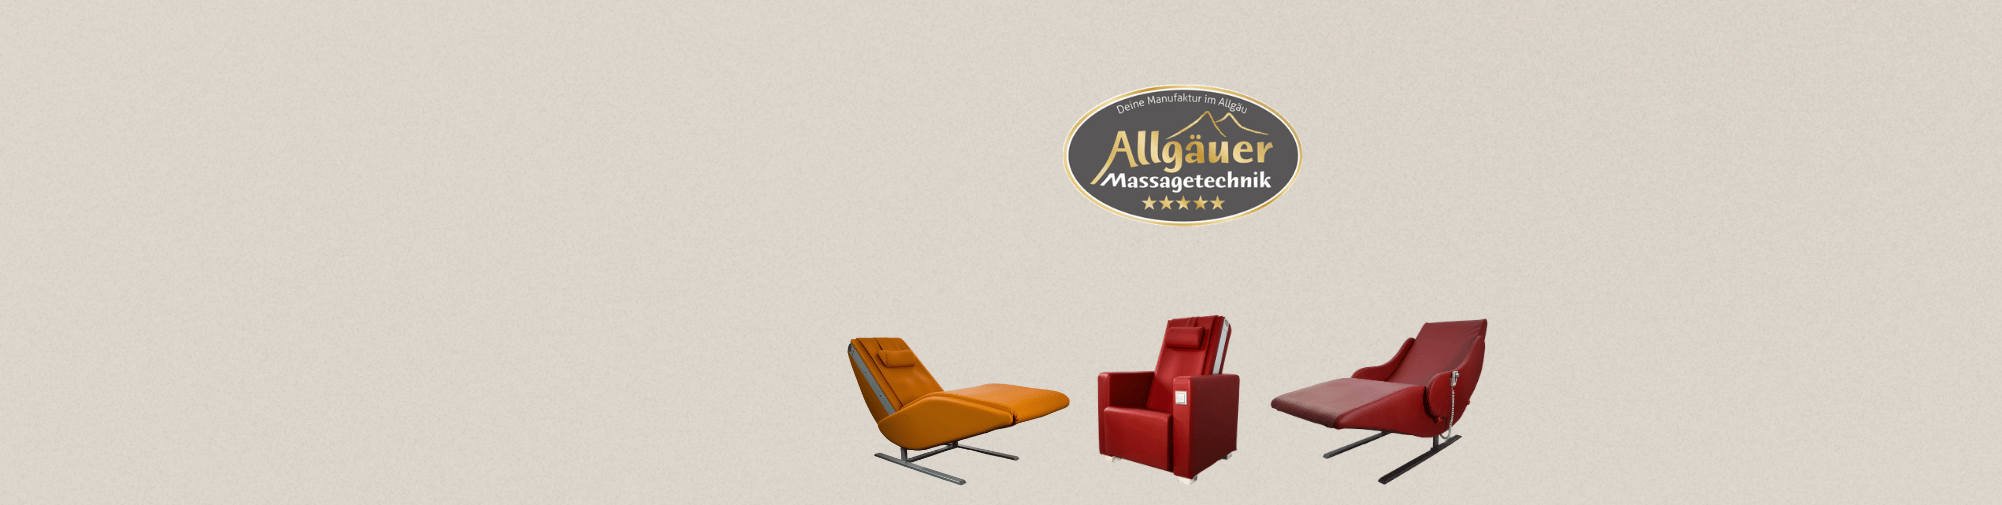 Allgäuer Massagetechnik - Le monde des fauteuils de massage